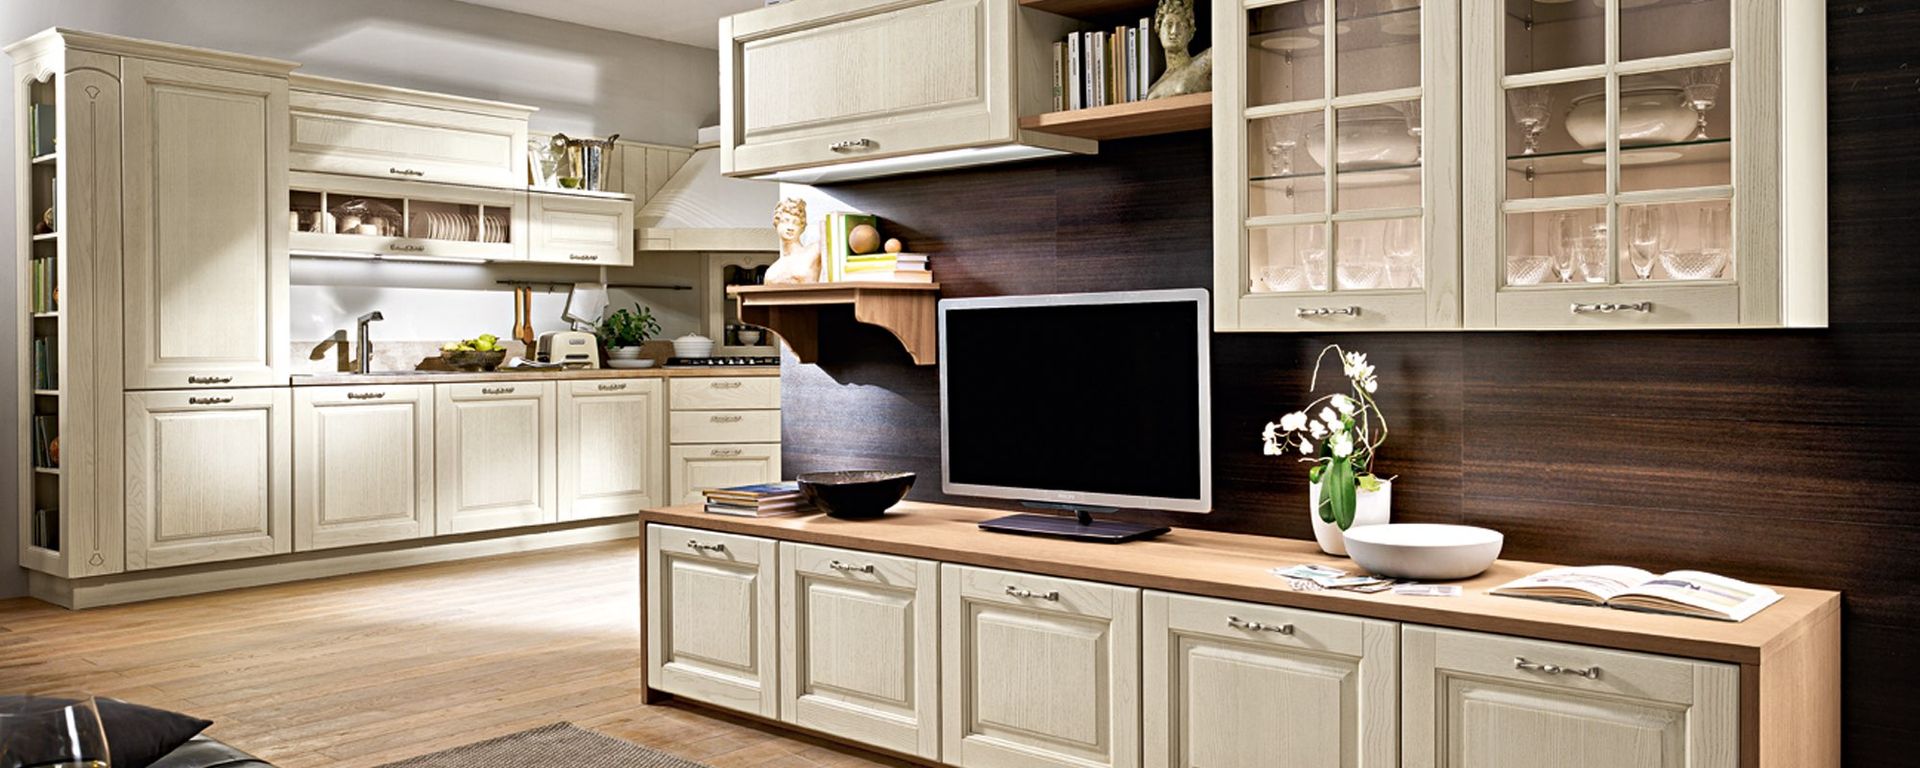 vista di una cucina stosa classica con televisione su un bancone e arredamenti -Bolgheri